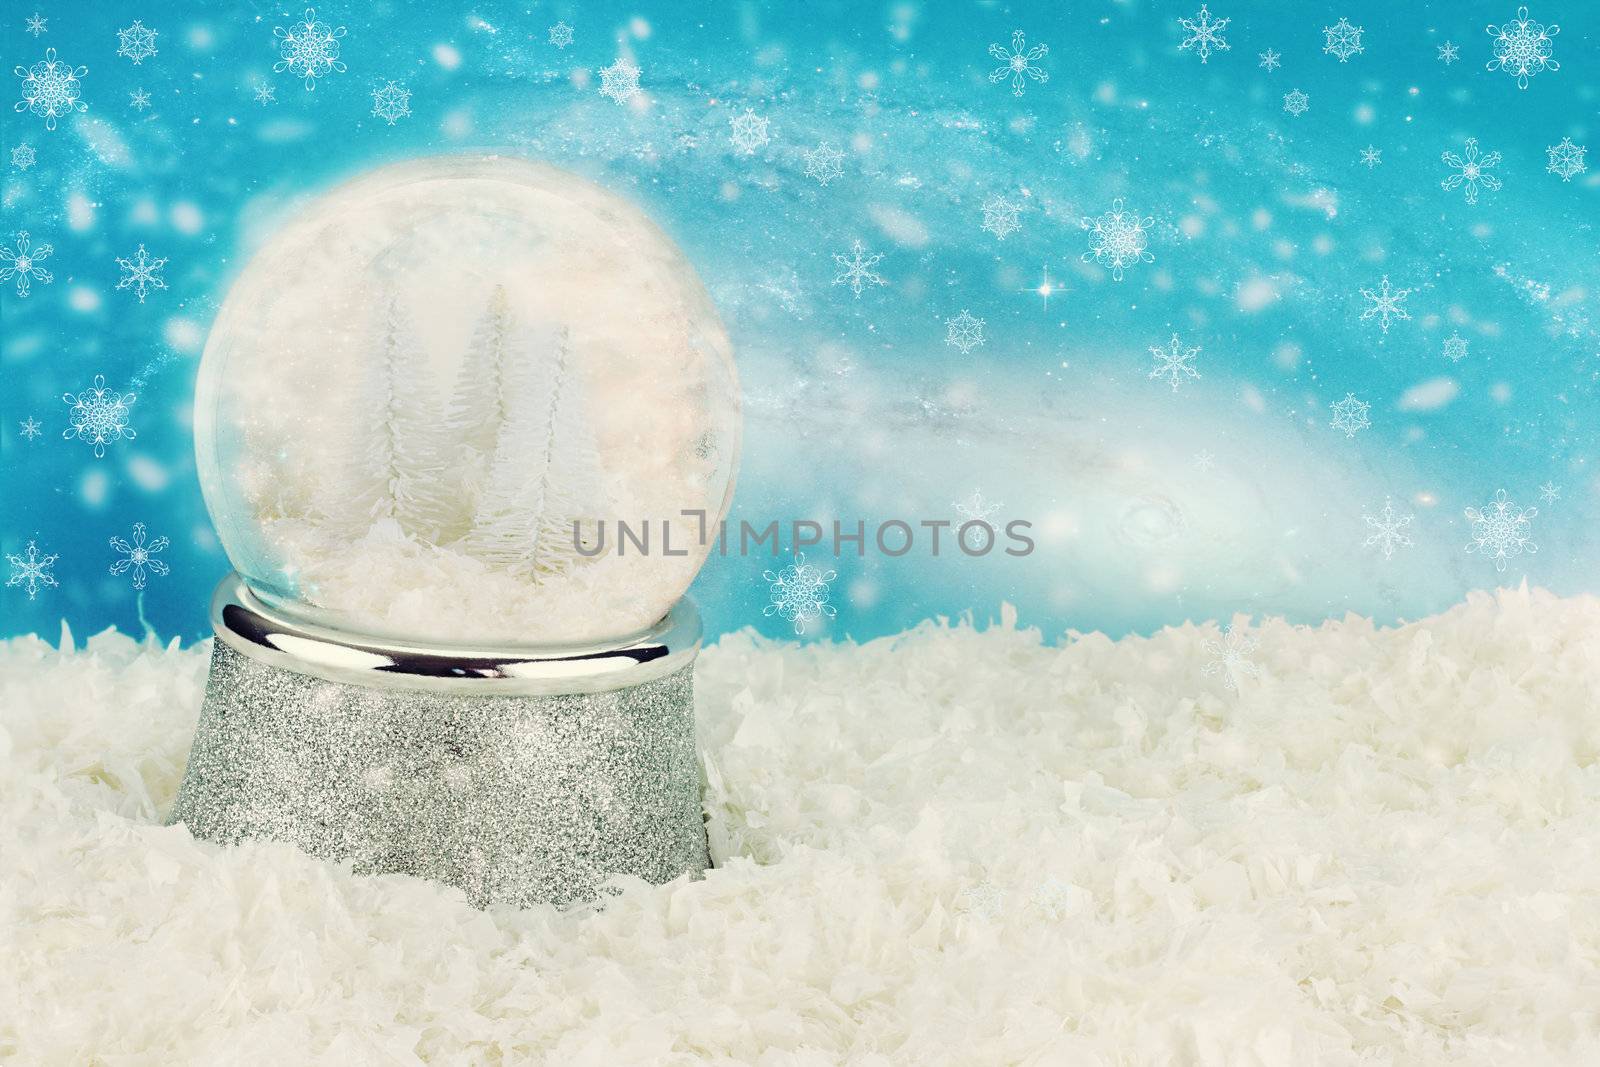 Winterland Snow Globe by StephanieFrey